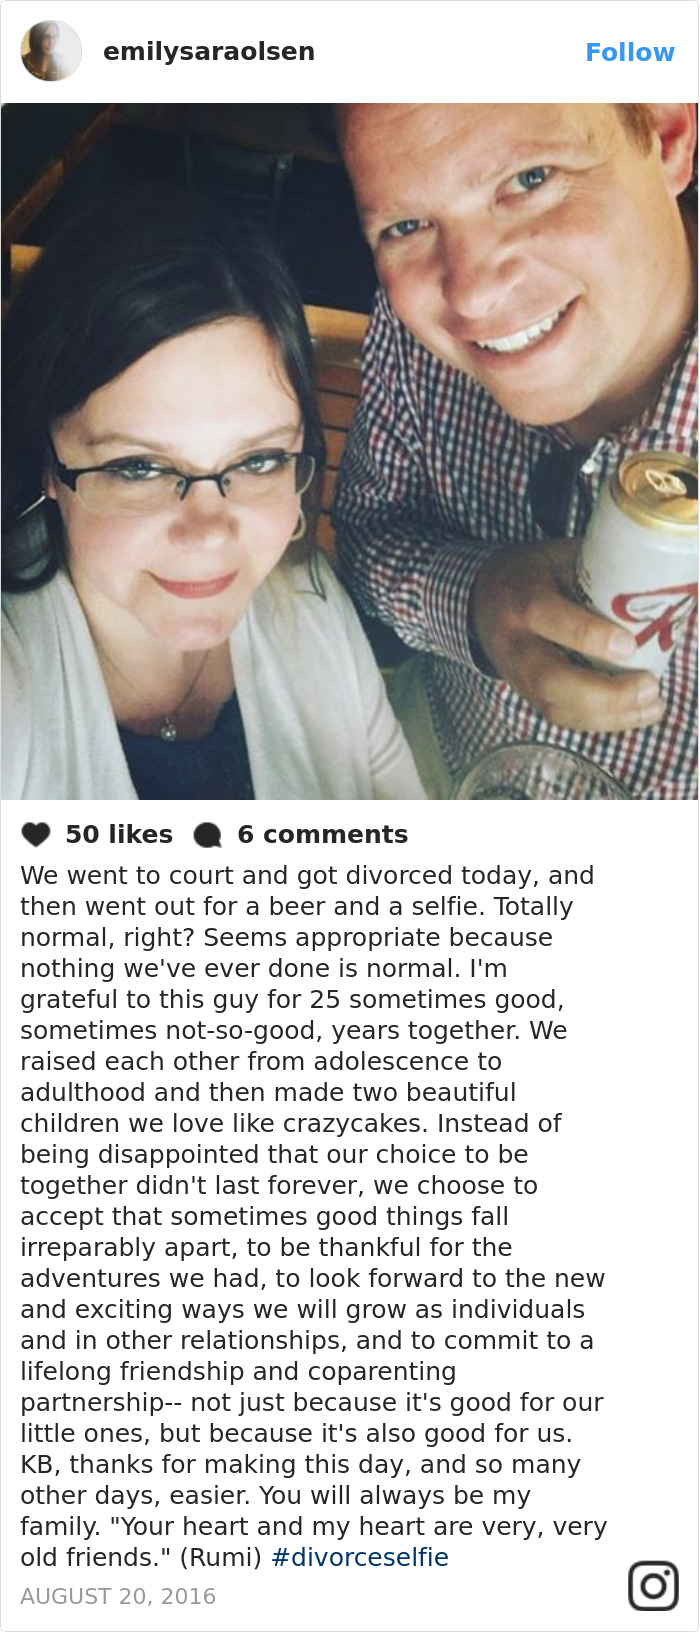 La nueva moda de tomar una selfie al momento de concretar el divorcio